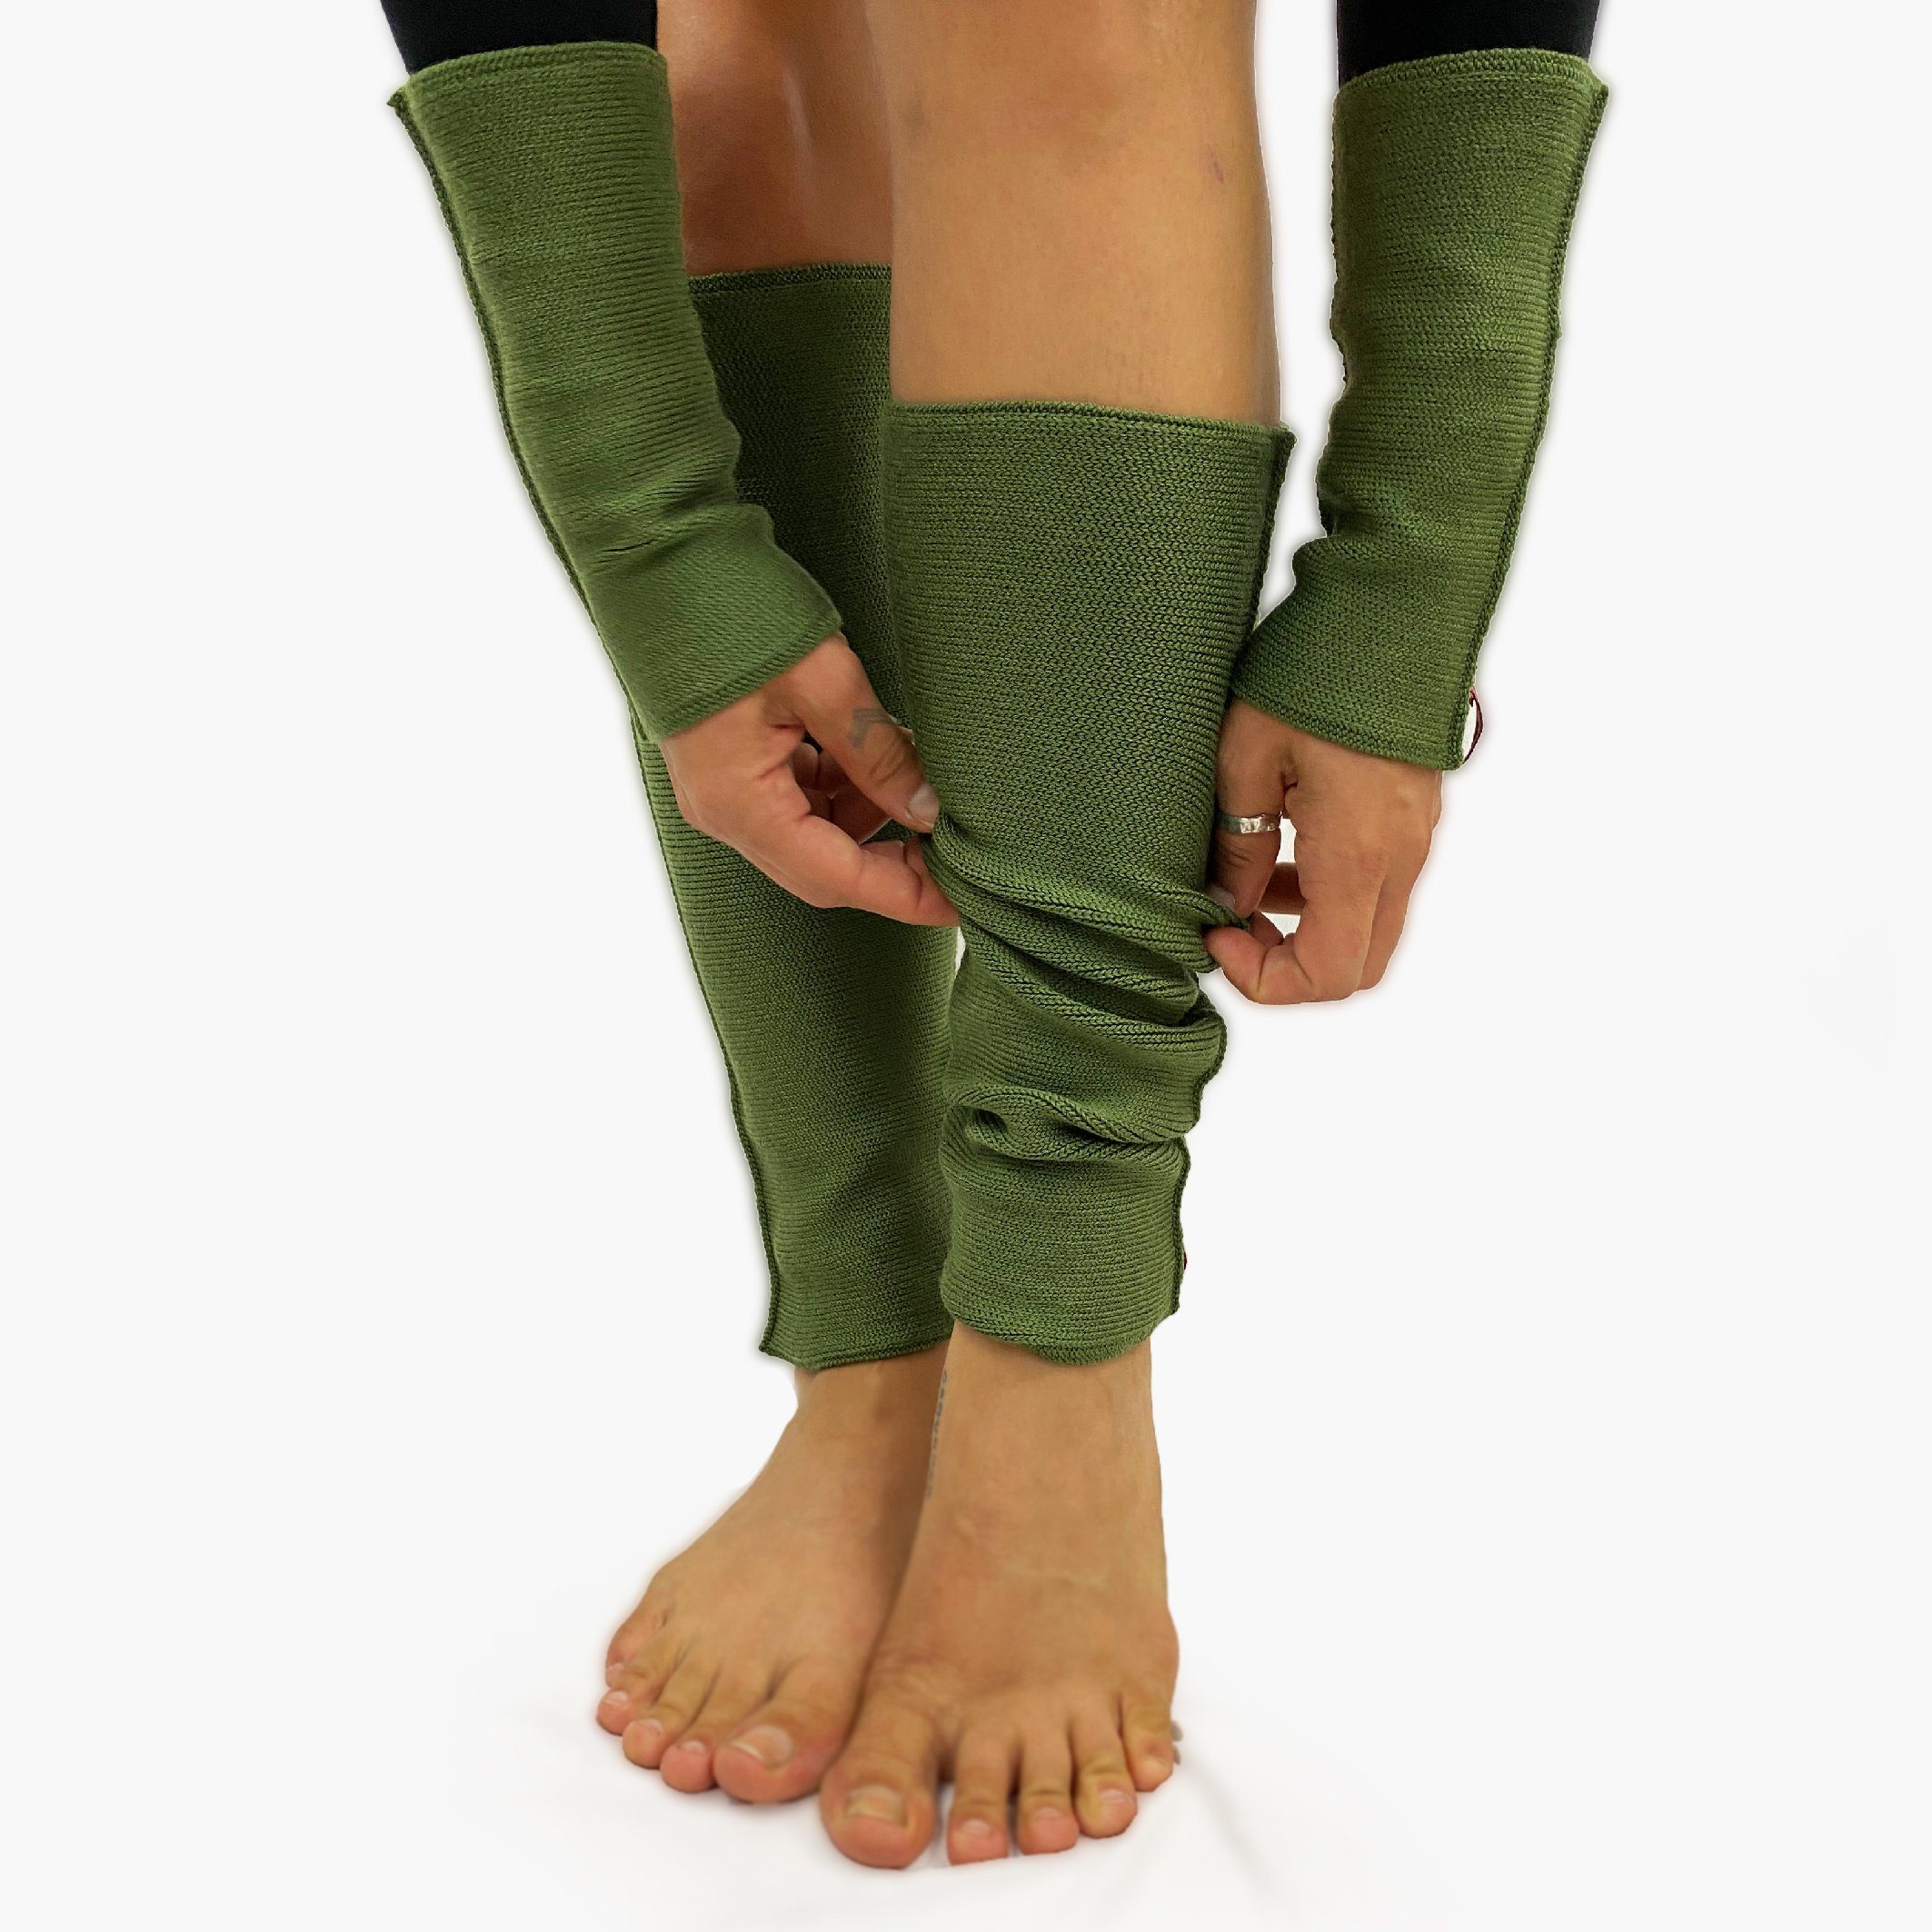 Strick, elastisch, Beinstulpen256 weichem Gelenkwärmer Grün wärmend, Beinstulpen formbeständig, vincente® aus